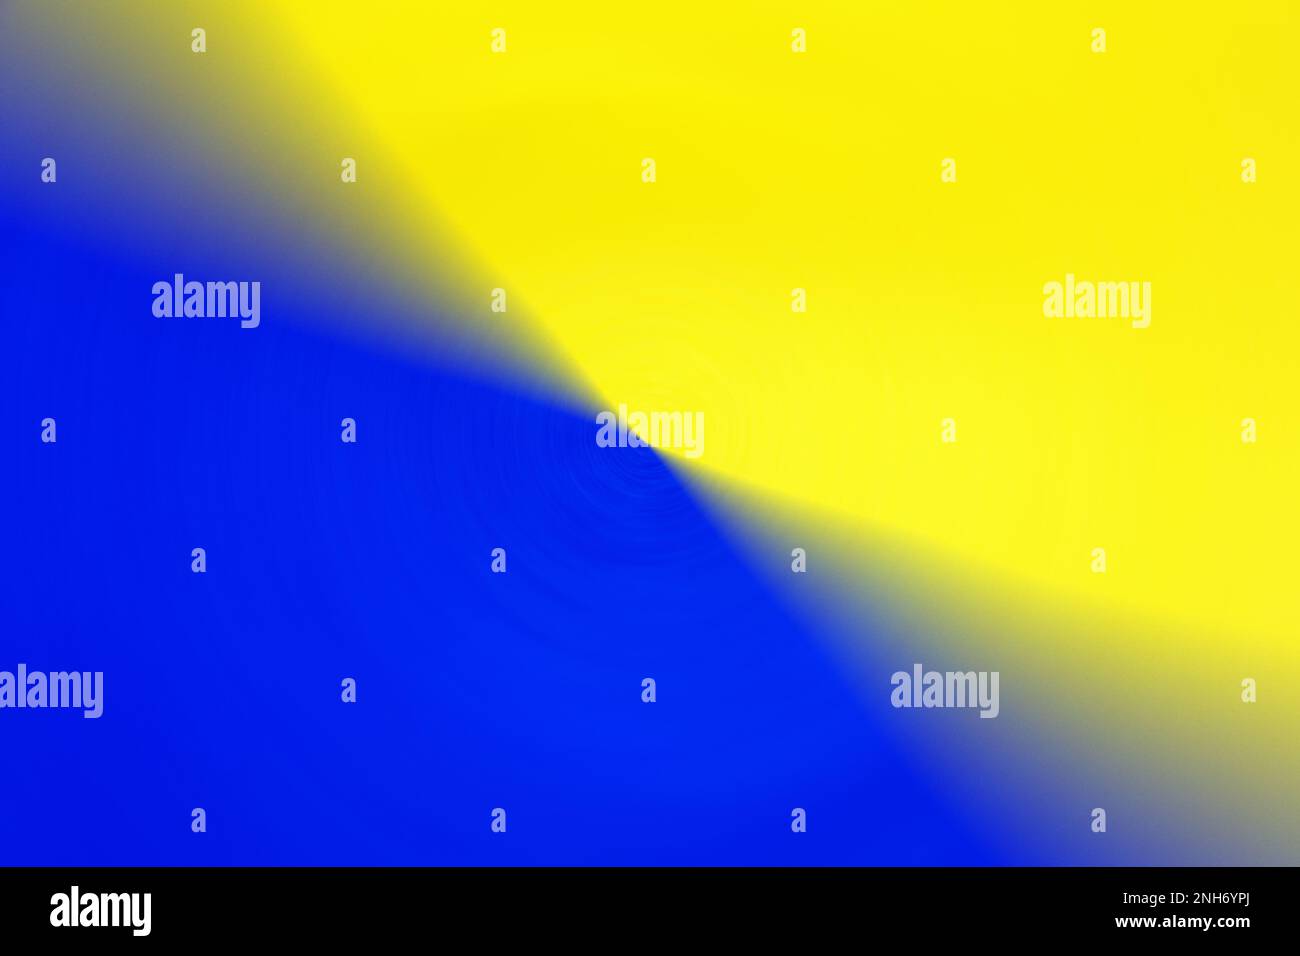 Astratto geometrico a due colori, blu e giallo, coloratissime texture minime di backgroung. Mettere a fuoco la foto centrale Foto Stock